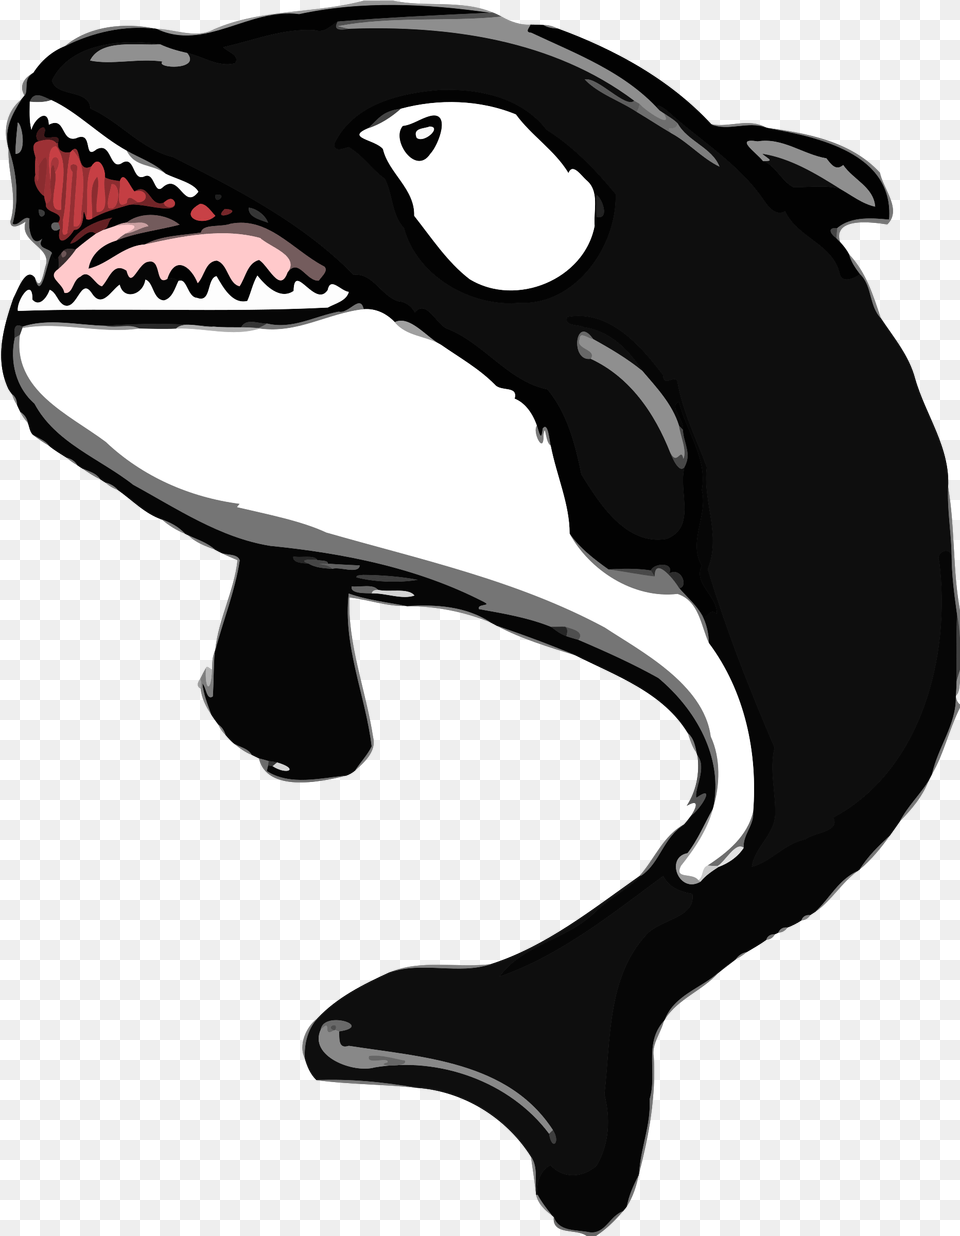 Killer Whale Small, Animal, Sea Life, Mammal, Kangaroo Png Image